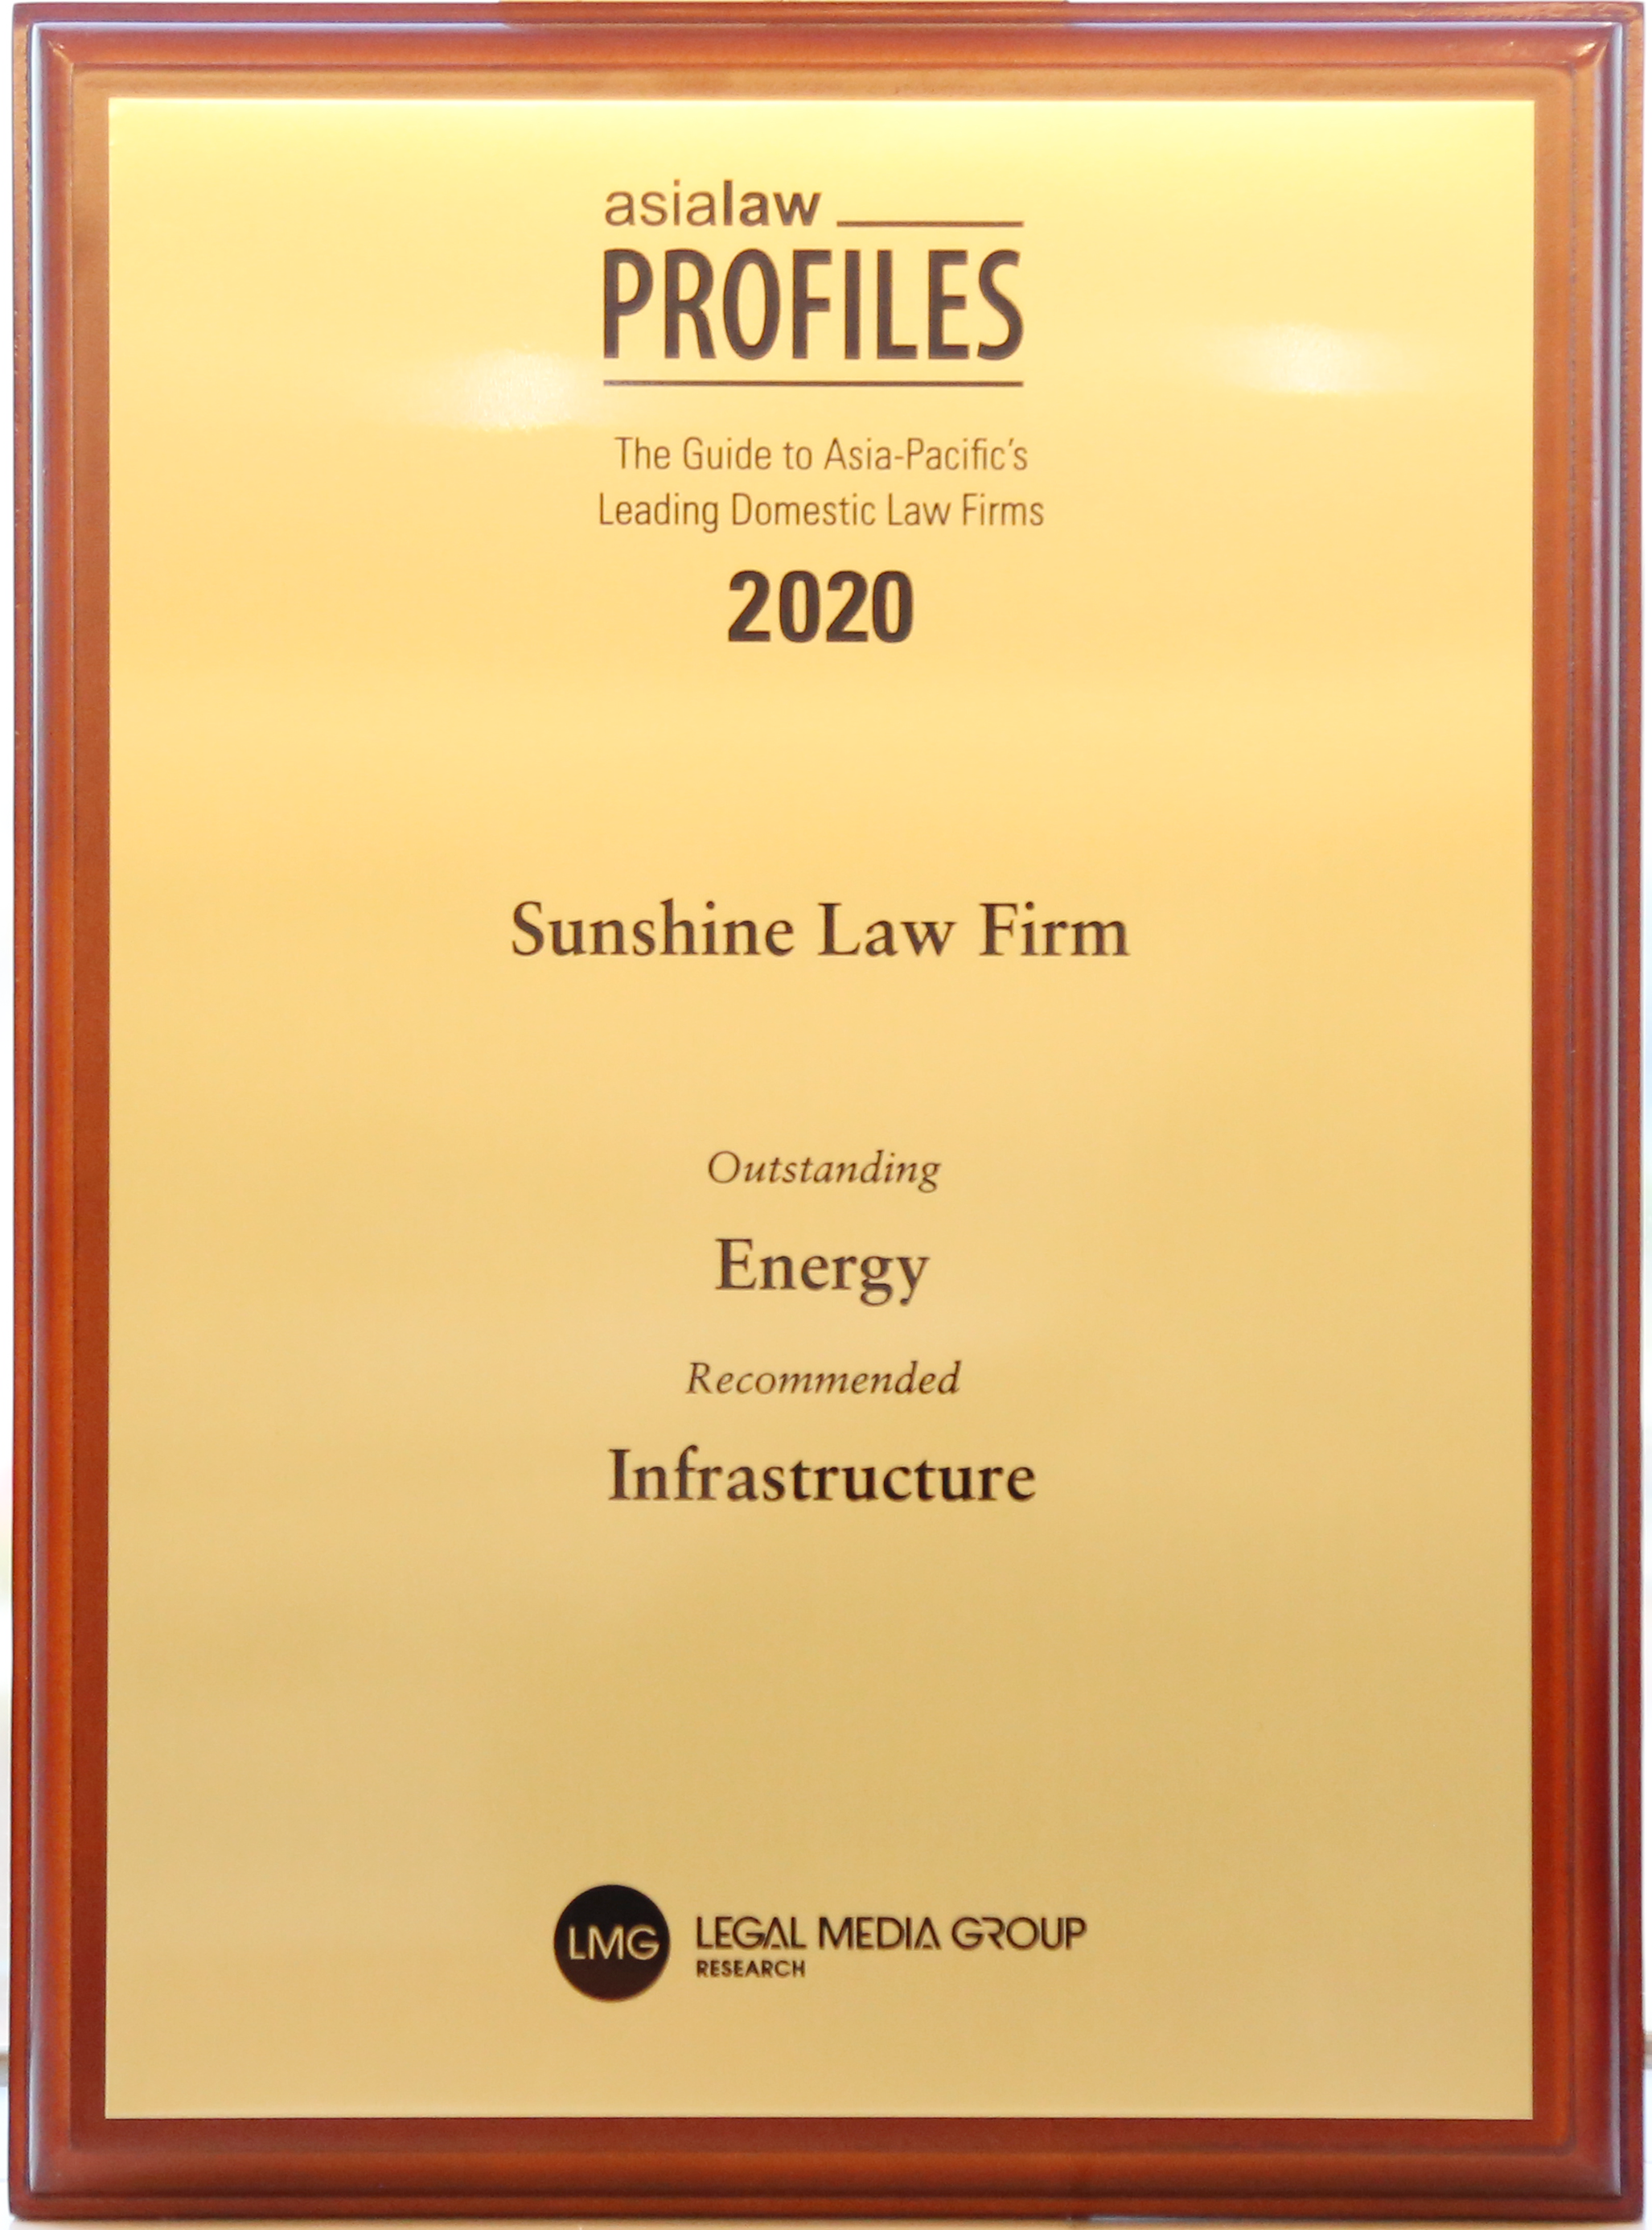 阳光所荣获2020年《亚洲法律概况》“能源”领域“杰出律所”和“基础设施”领域“推荐律所”称号